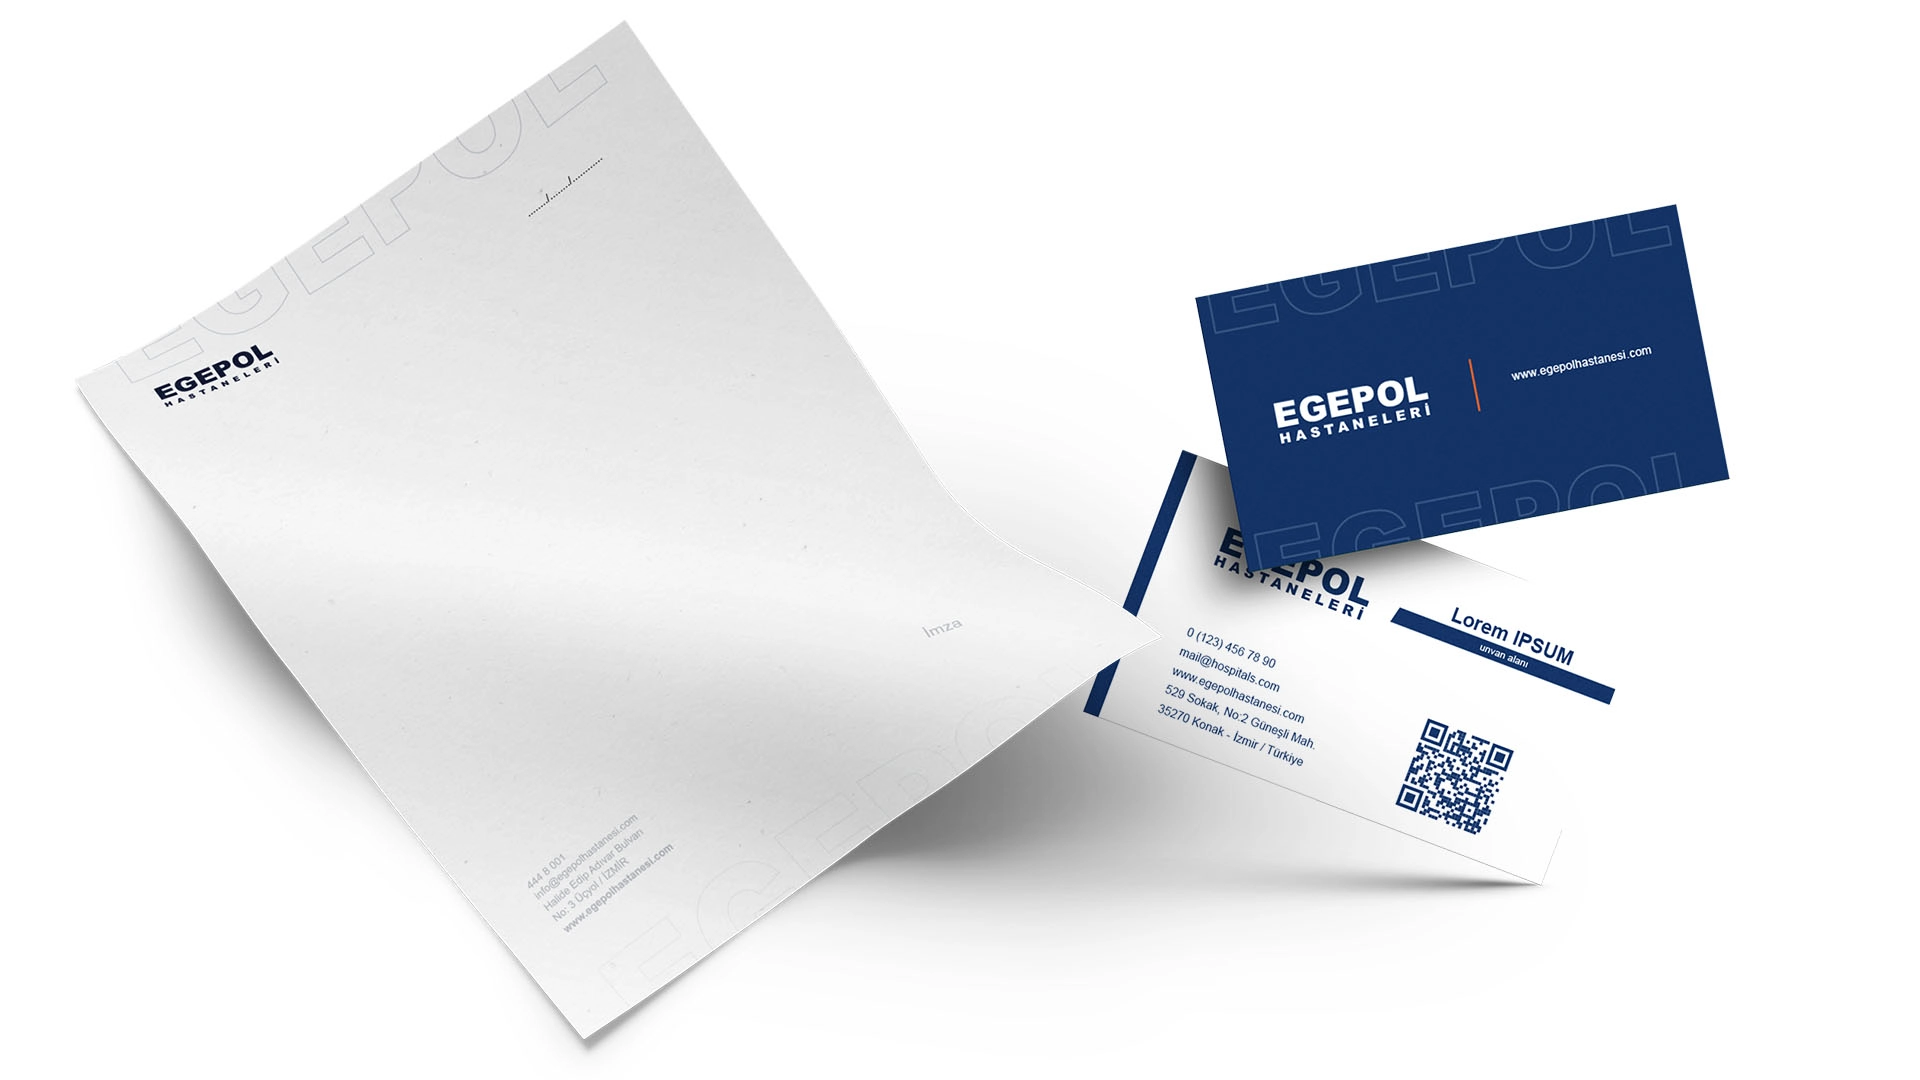 Egepol Hastanesi Kartvizit ve Antetli Kağıt Tasarımı